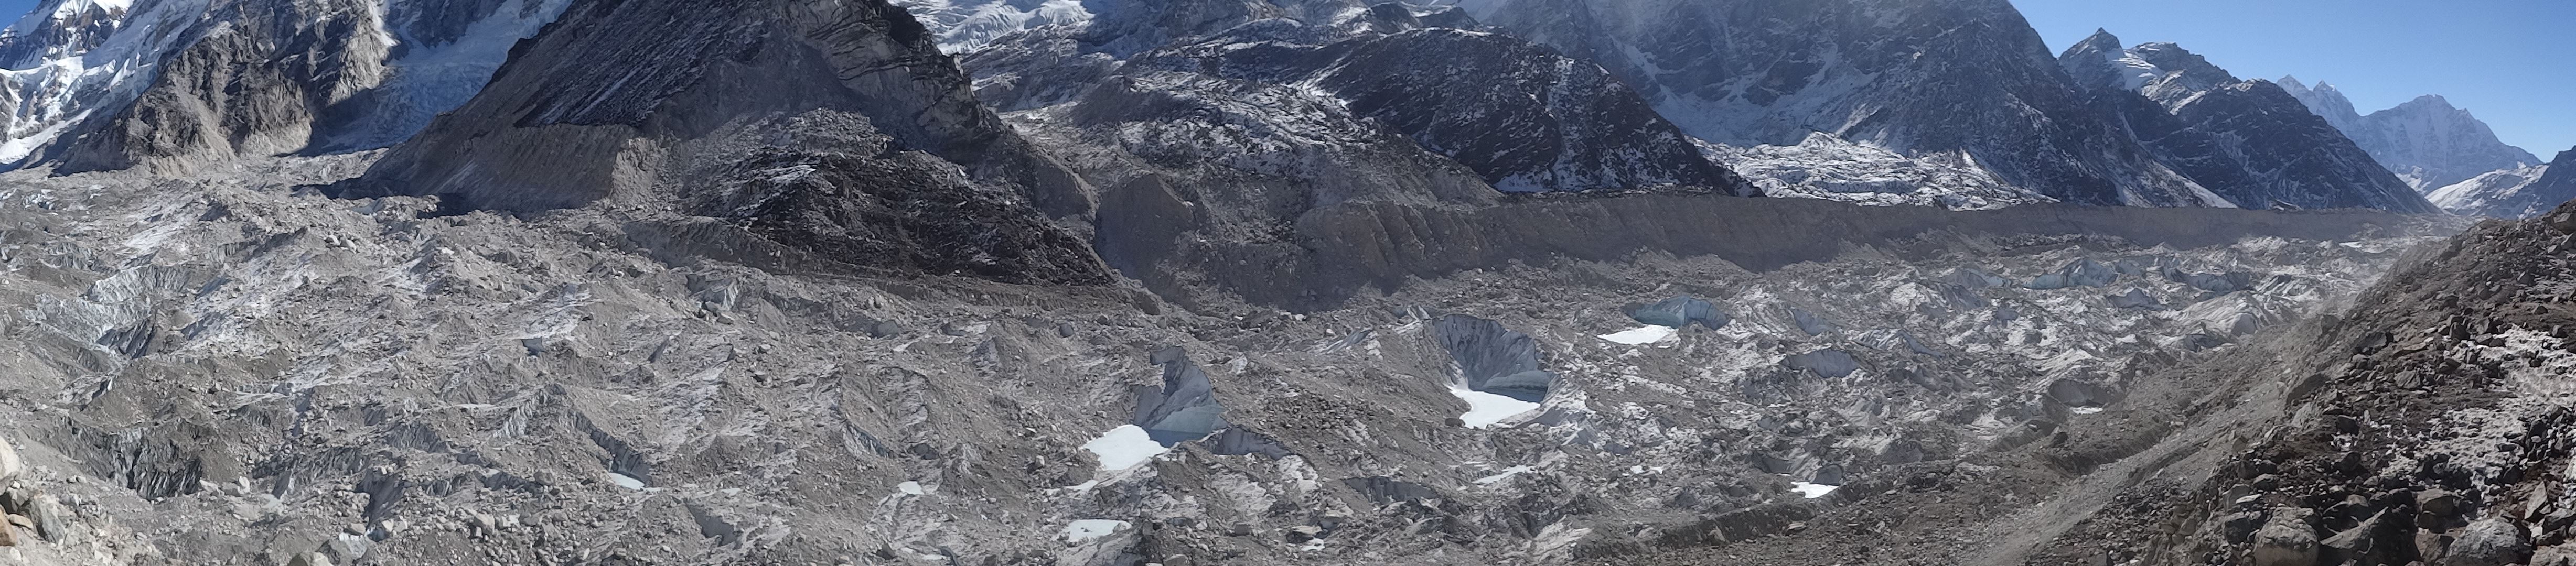 Khumbu gleccser.jpg